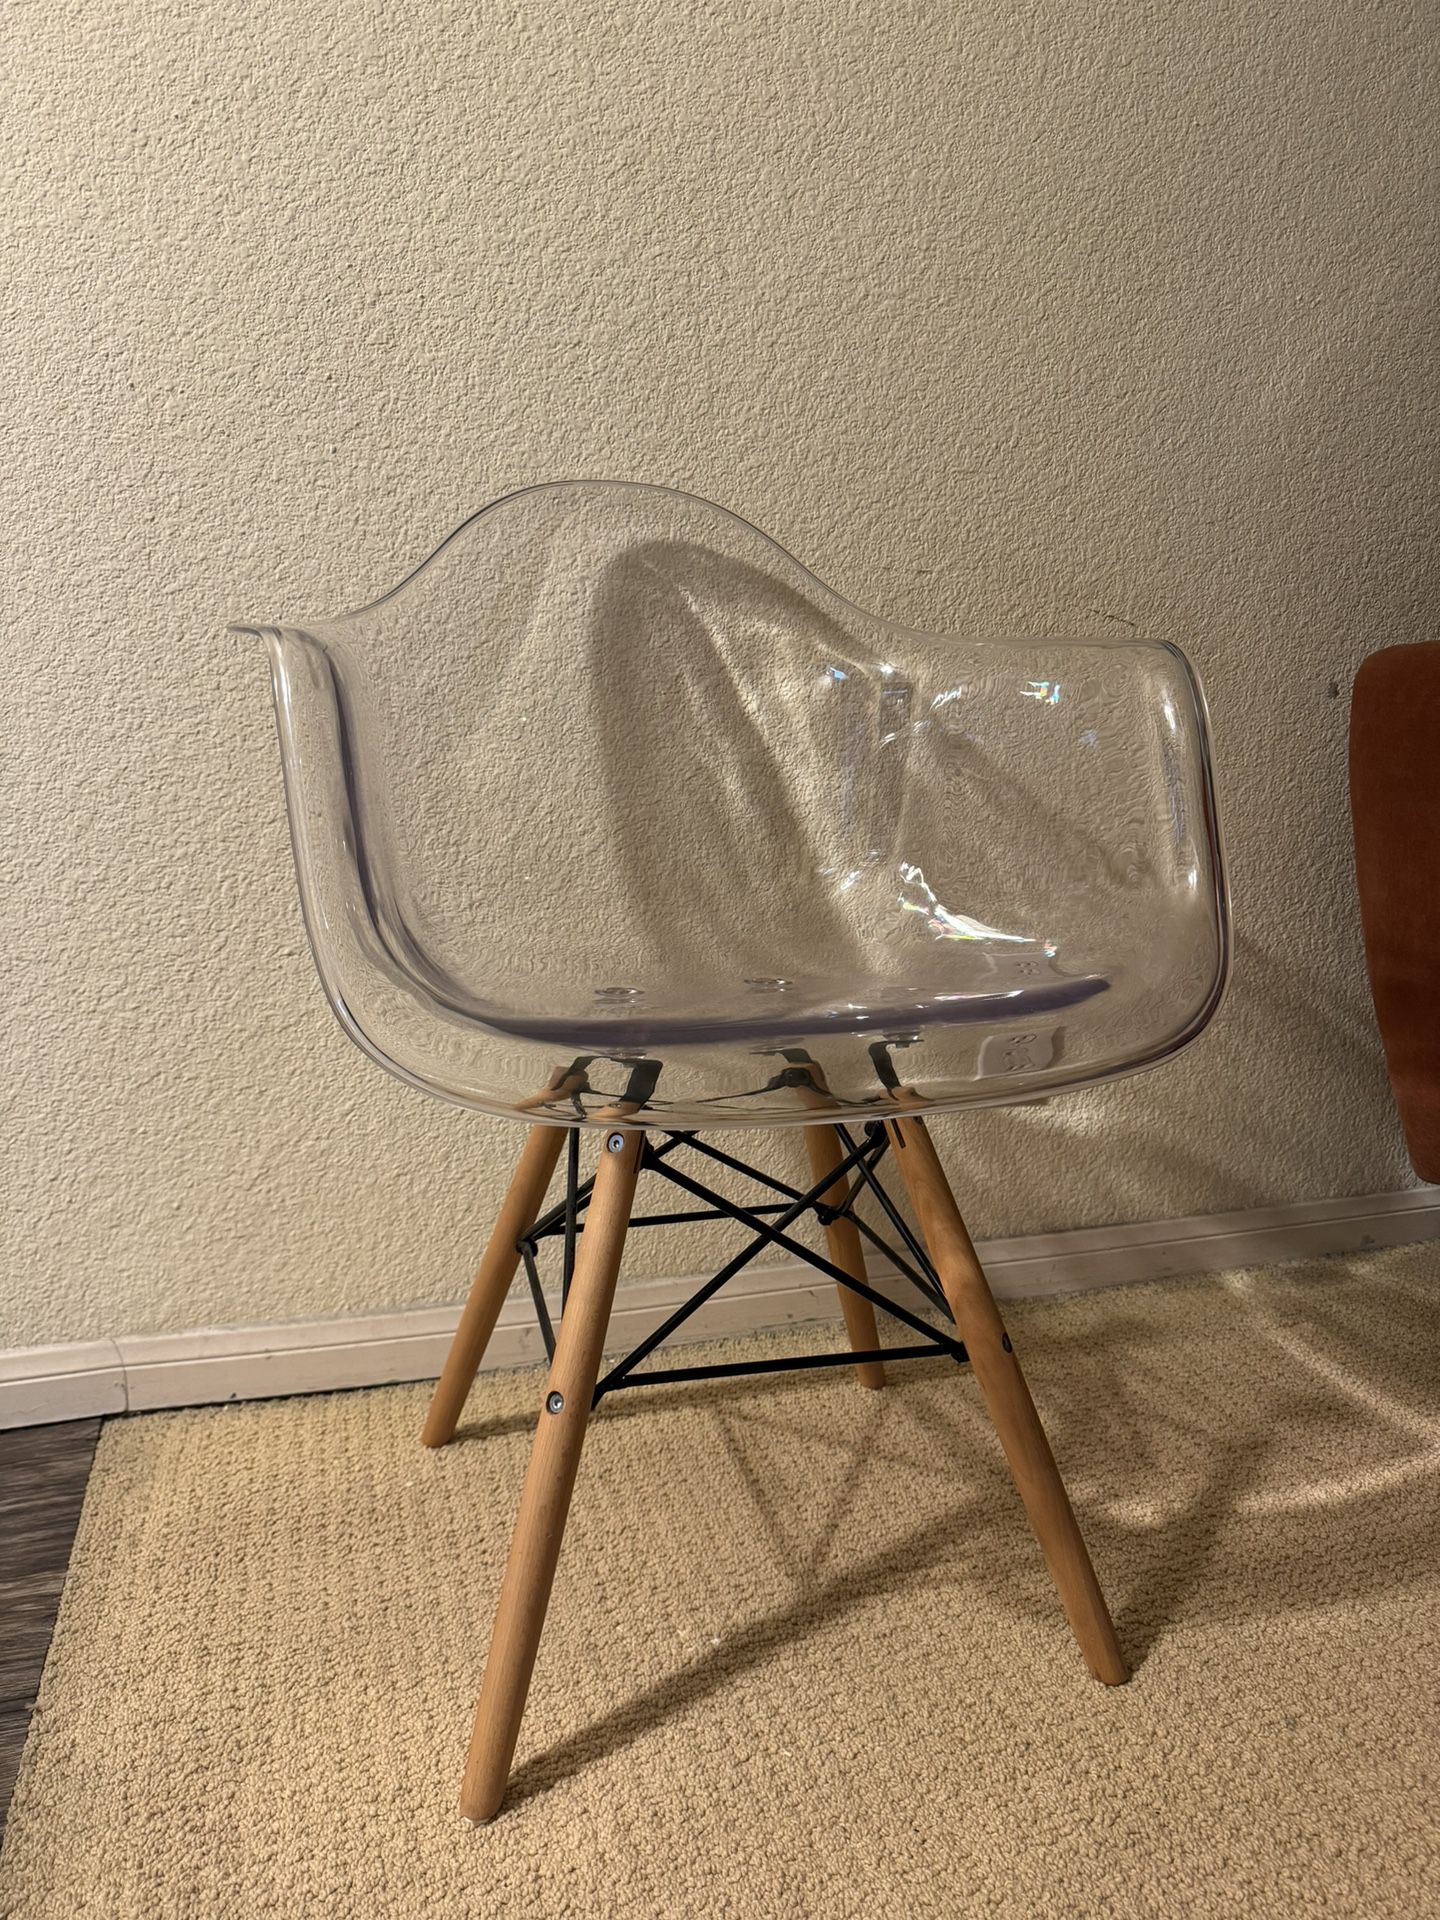 Clear acrylic chair